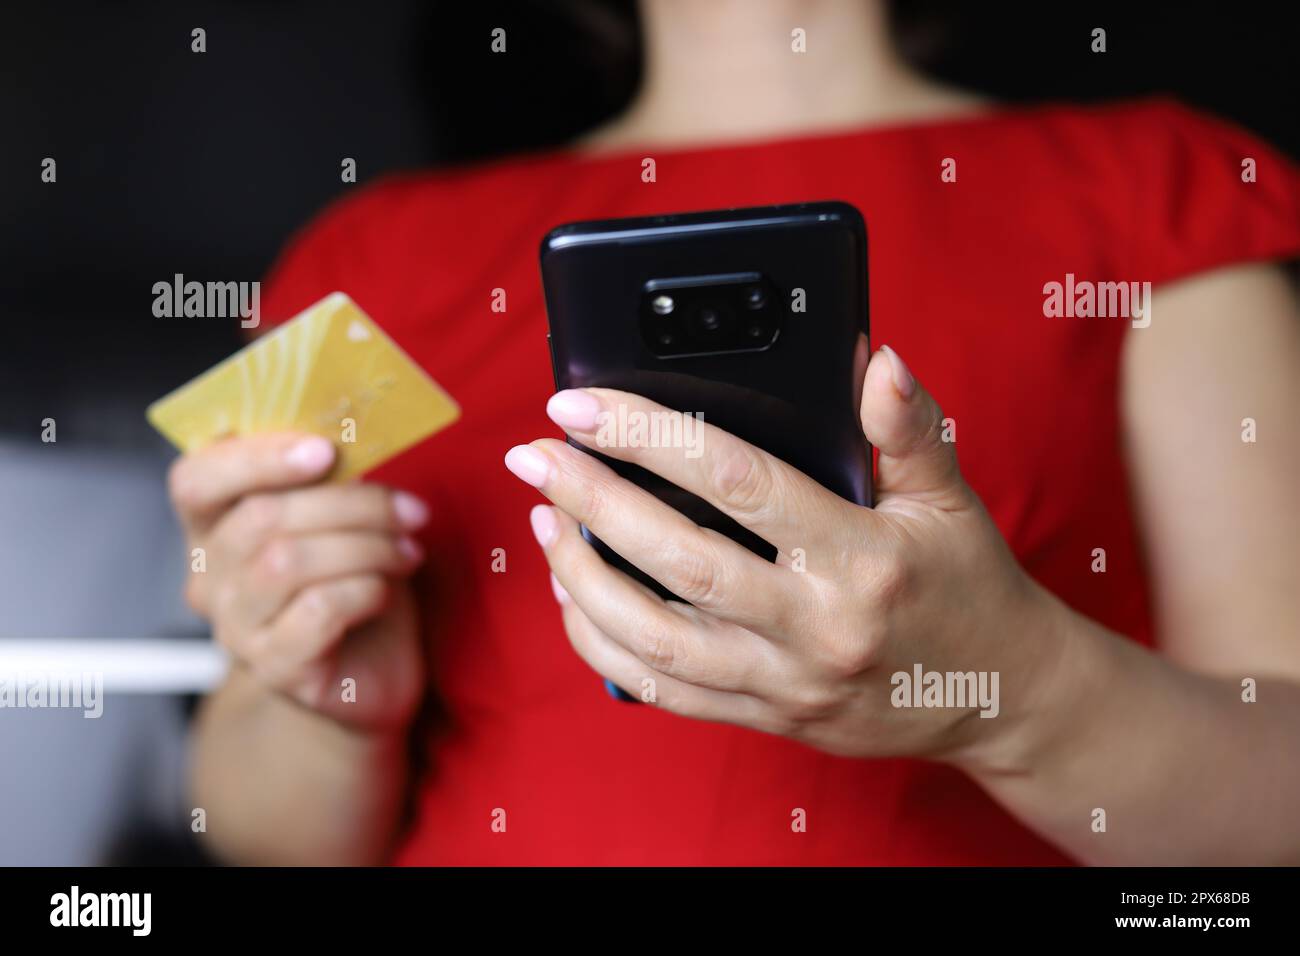 Femme en robe rouge tenant le smartphone et la carte de crédit entre les mains. Concept de paiements, d'achats et de transactions en ligne Banque D'Images